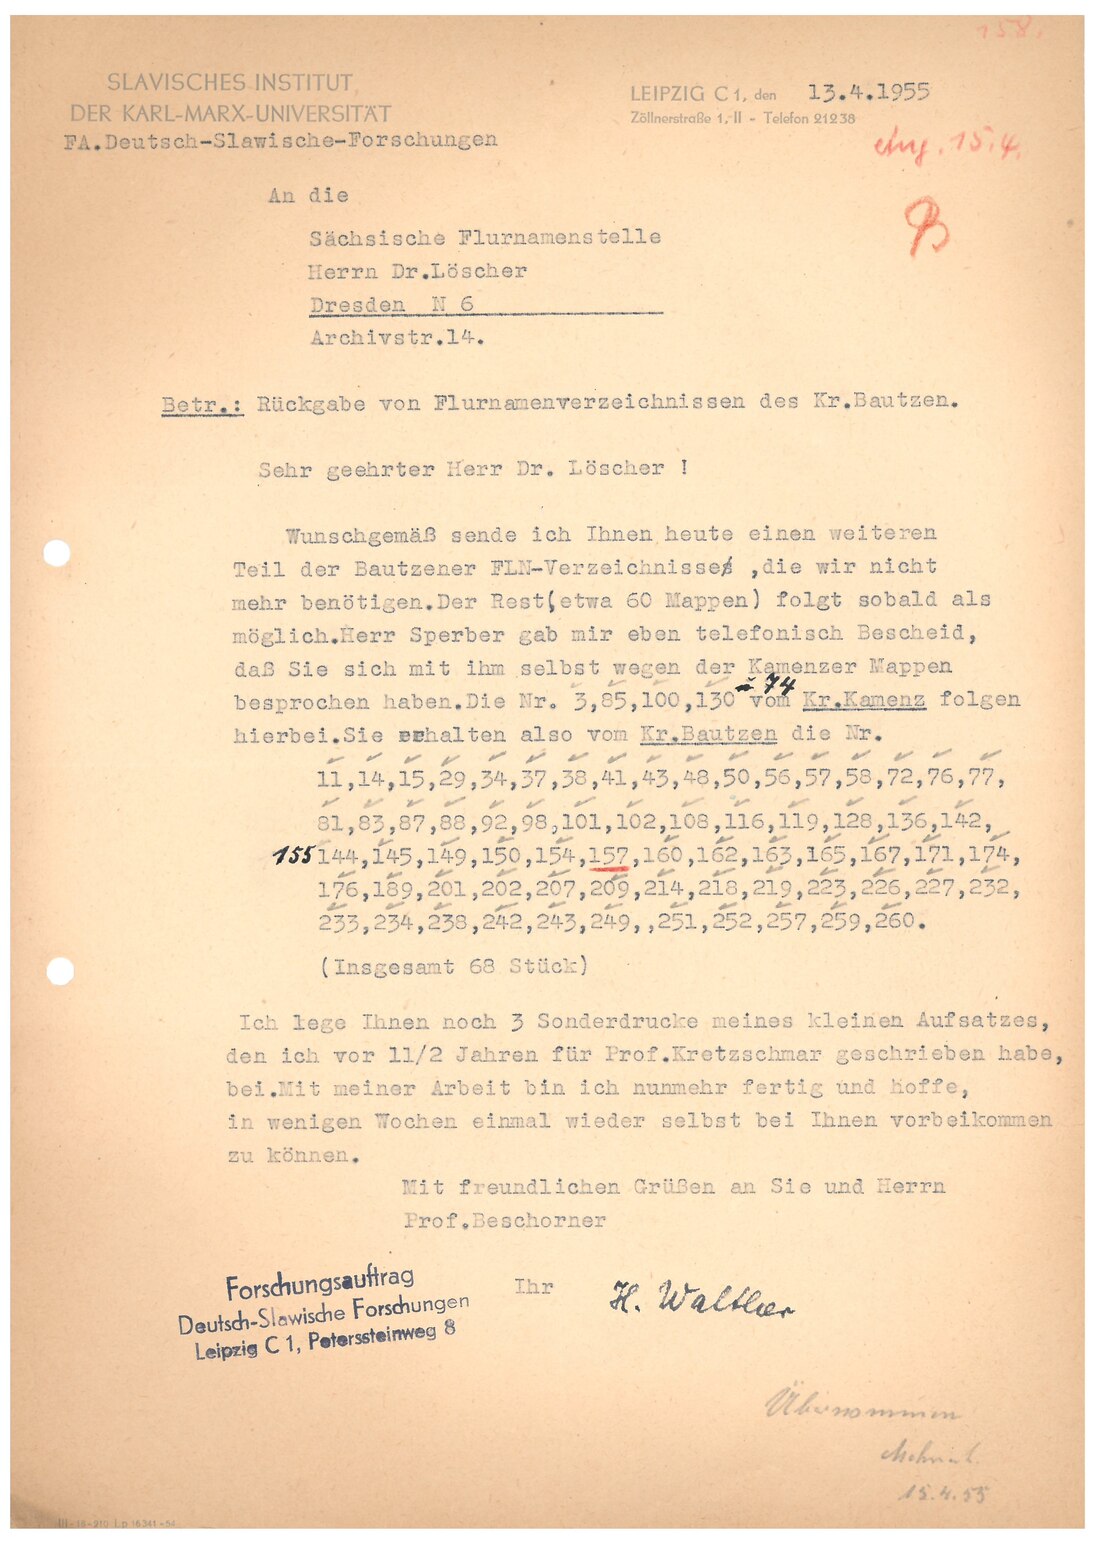 alt="Rückgabe von ausgeliehenen Flurnamenverzeichnissen, 1955"